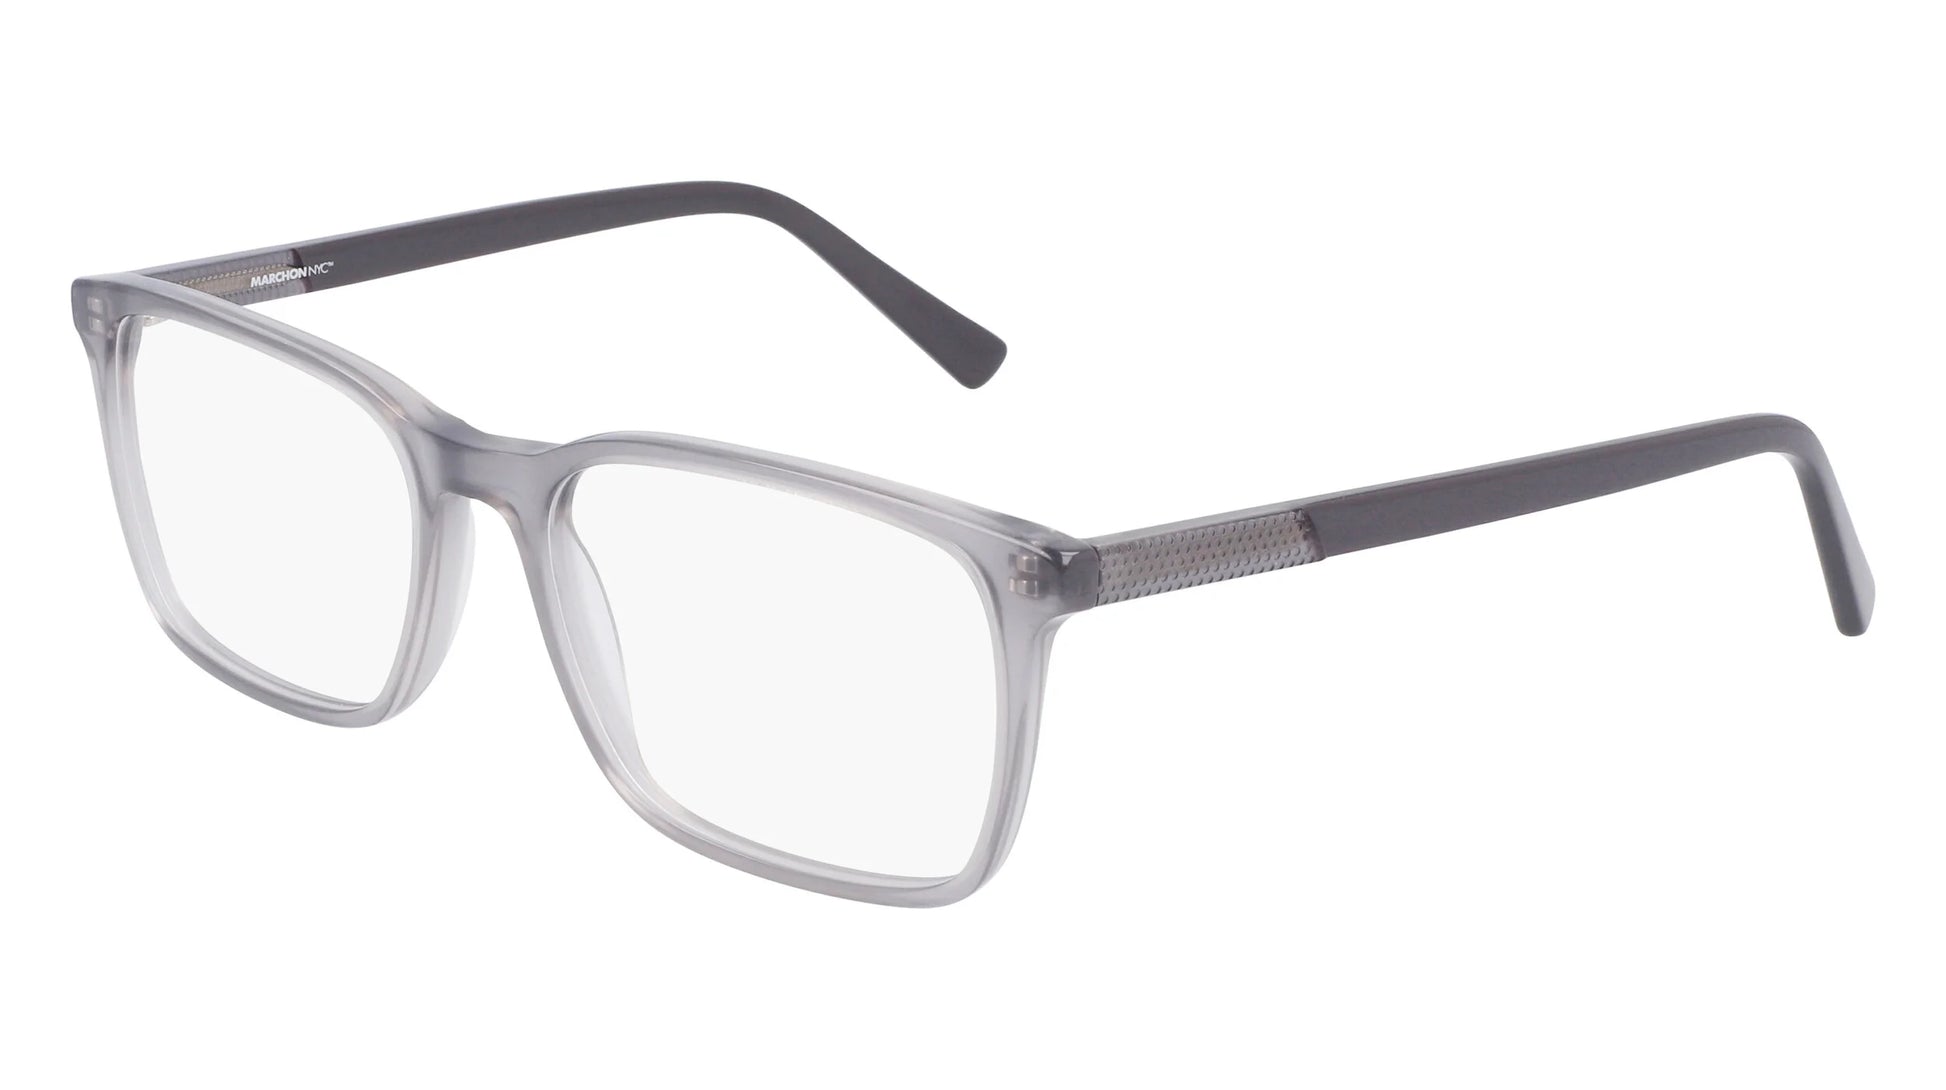 Marchon NYC M-3012 Eyeglasses Grey